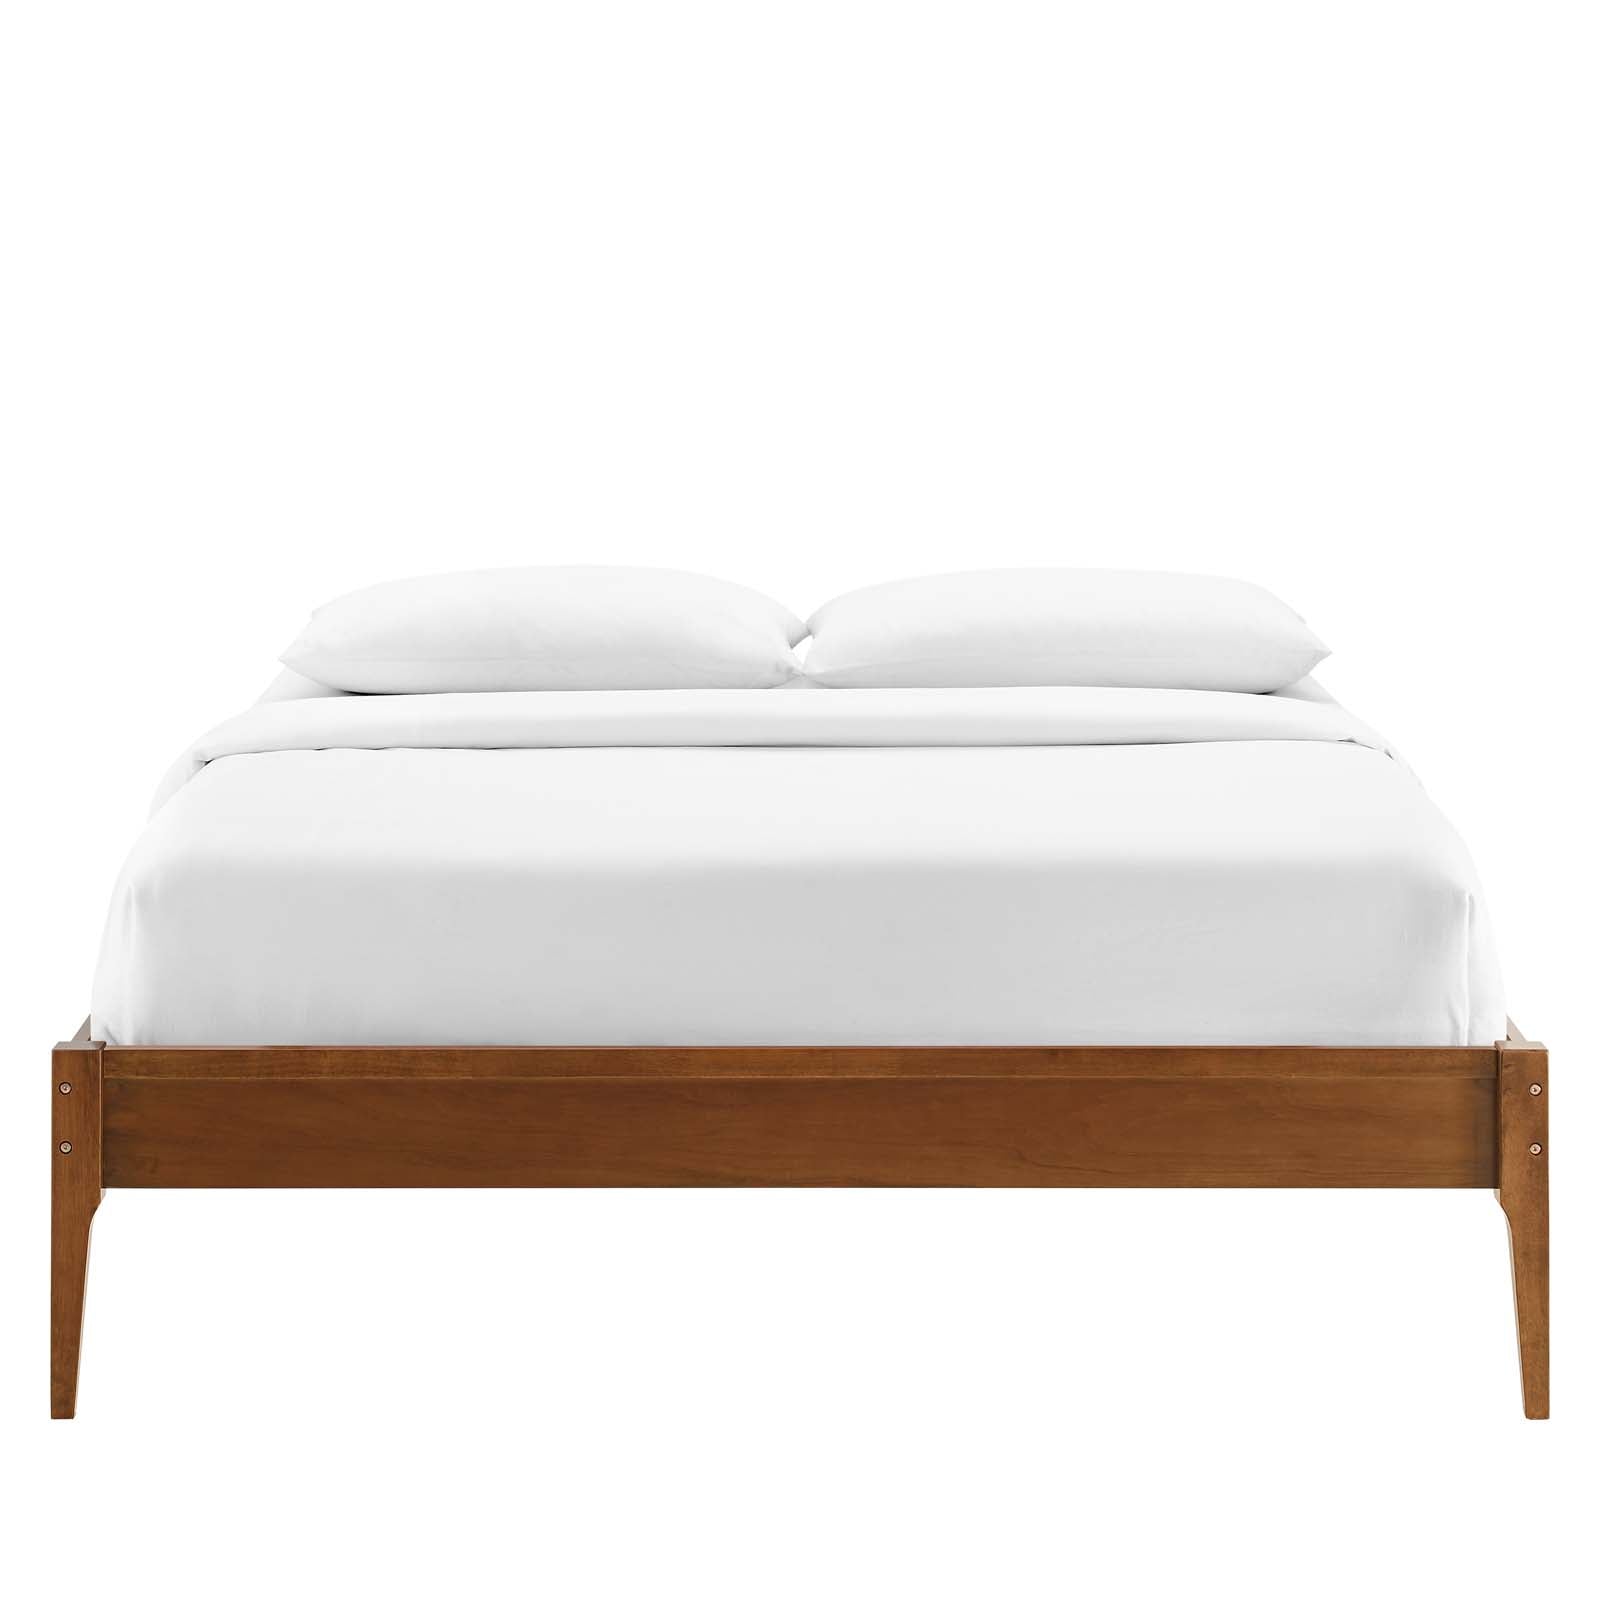 Modway Beds - June Twin Wood Platform Bed Frame Walnut